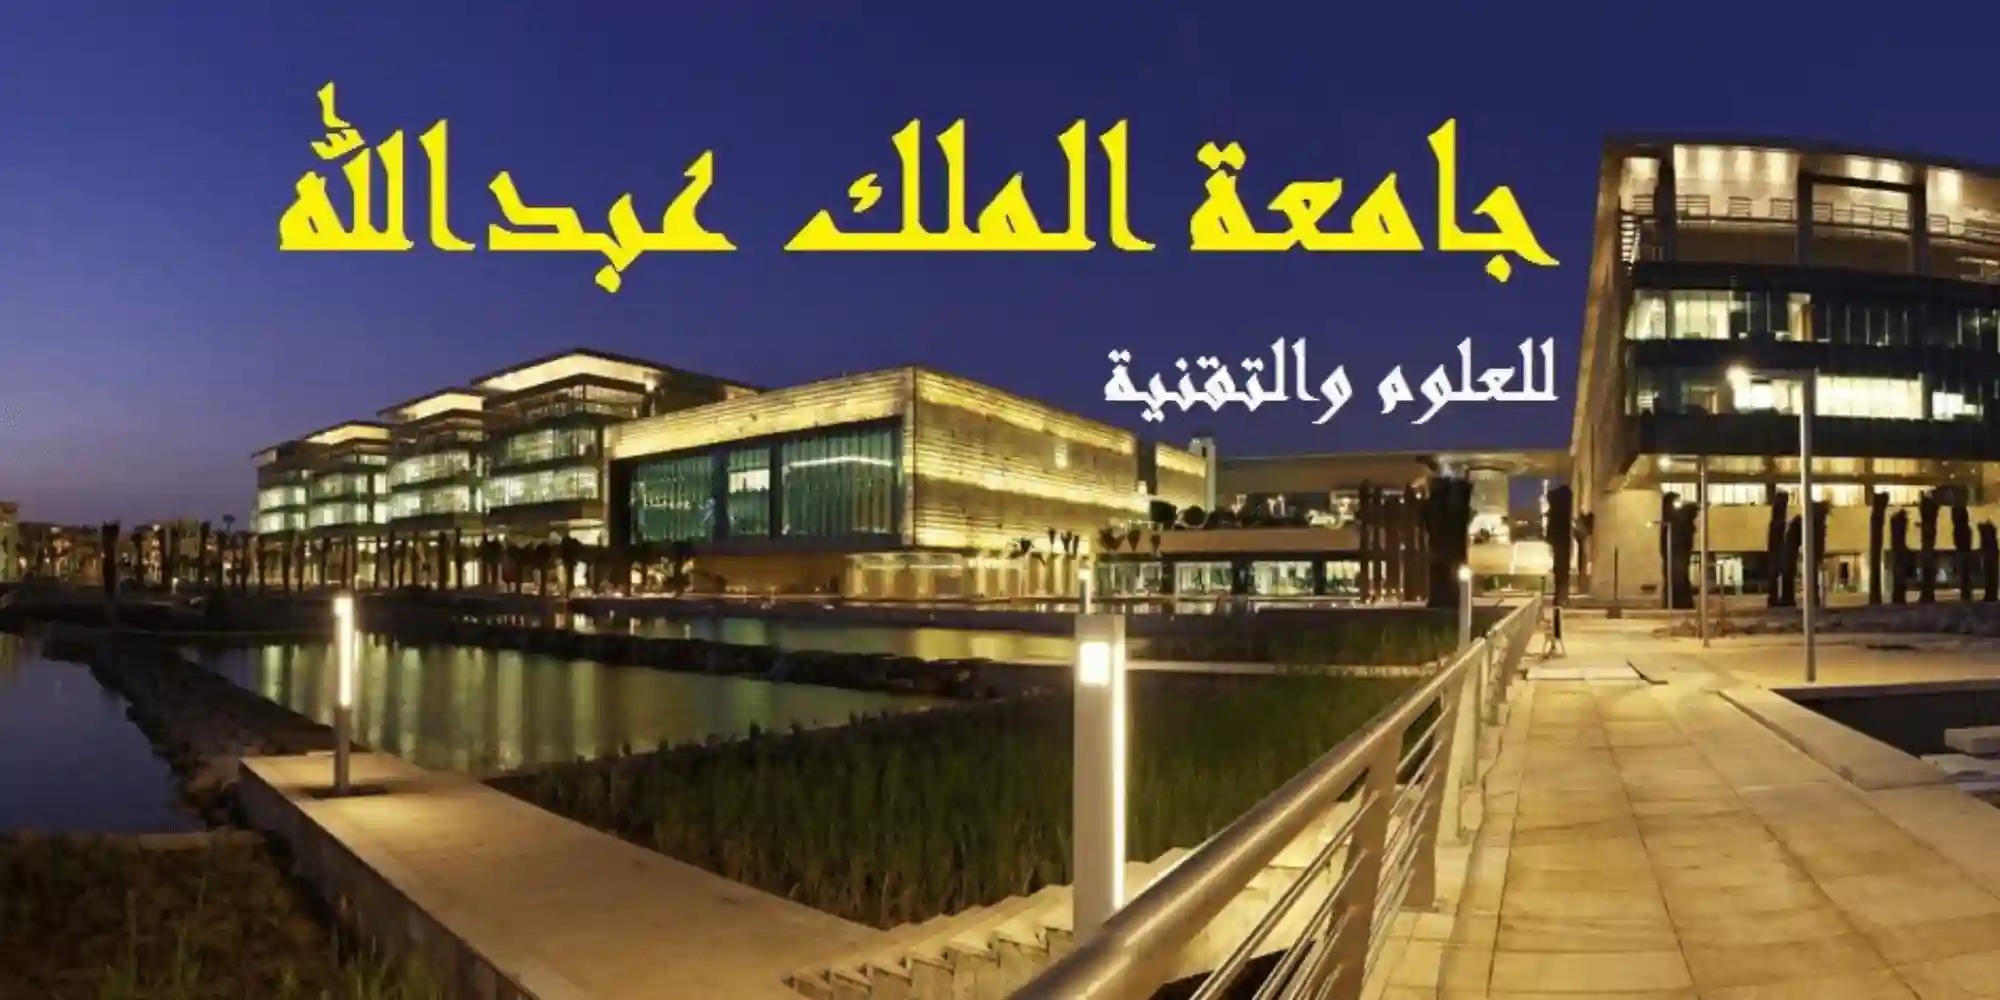 جامعة الملك عبد الله للعلوم والتقنية وظائف